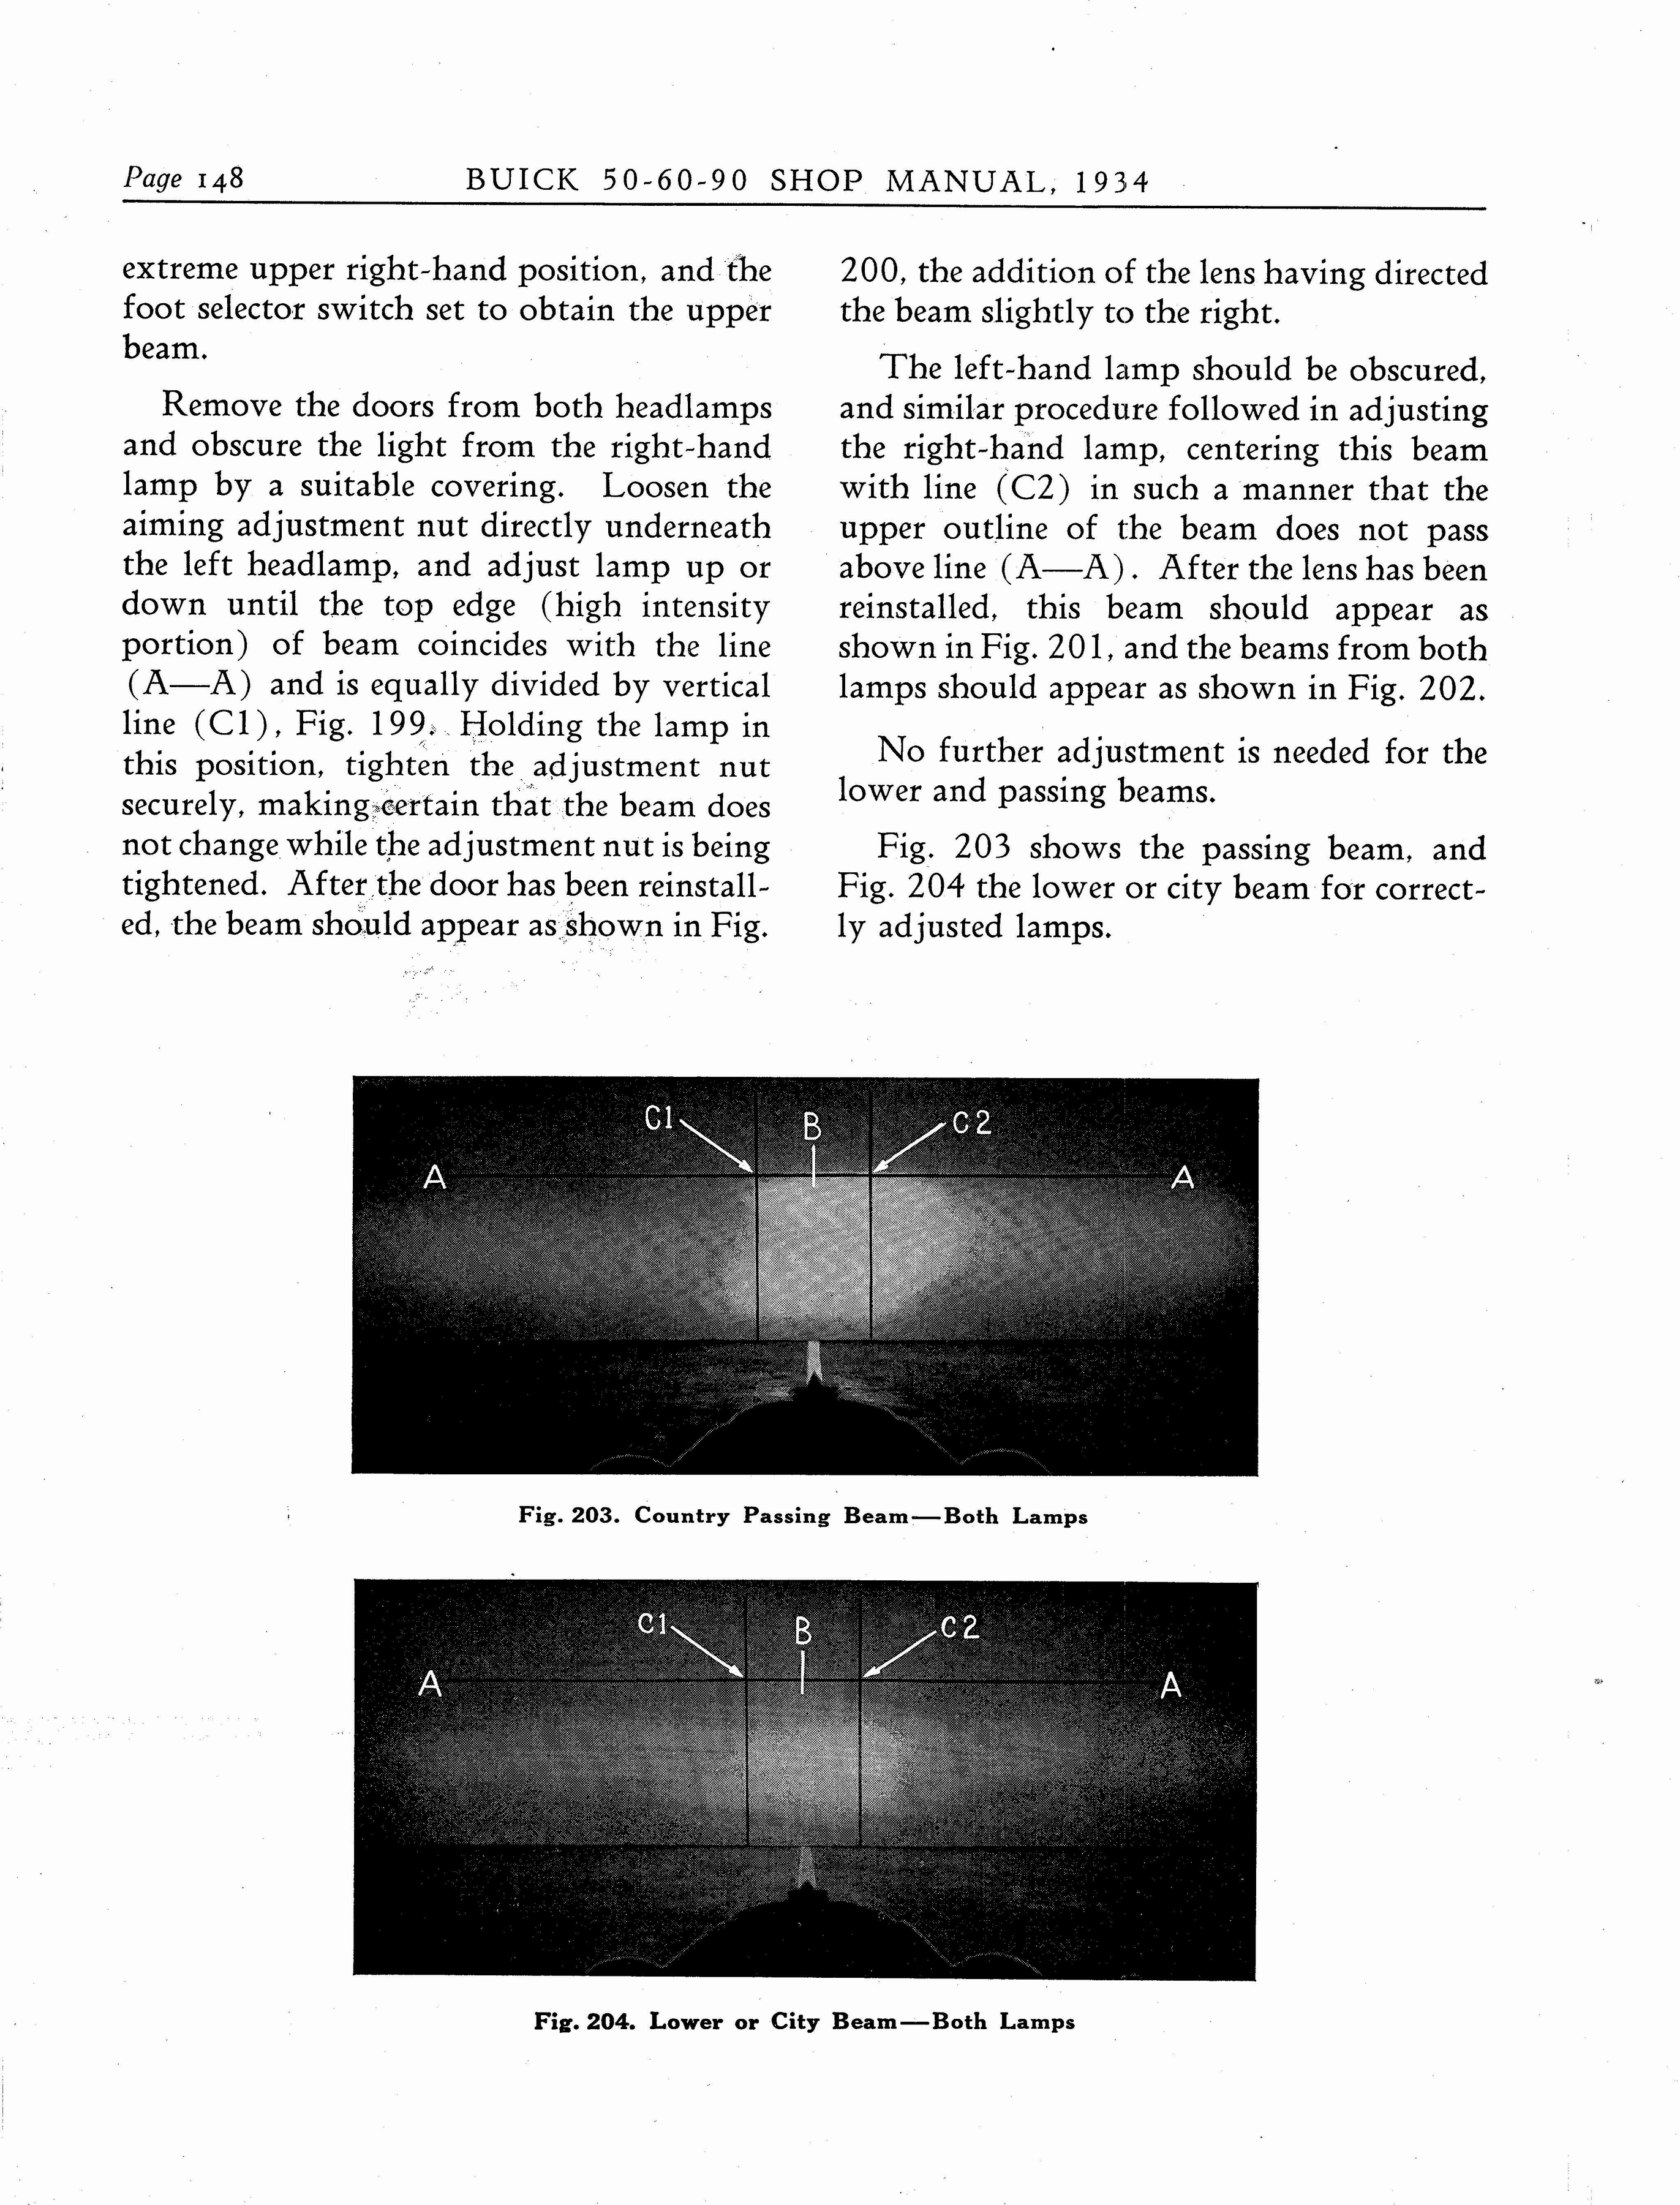 n_1934 Buick Series 50-60-90 Shop Manual_Page_149.jpg